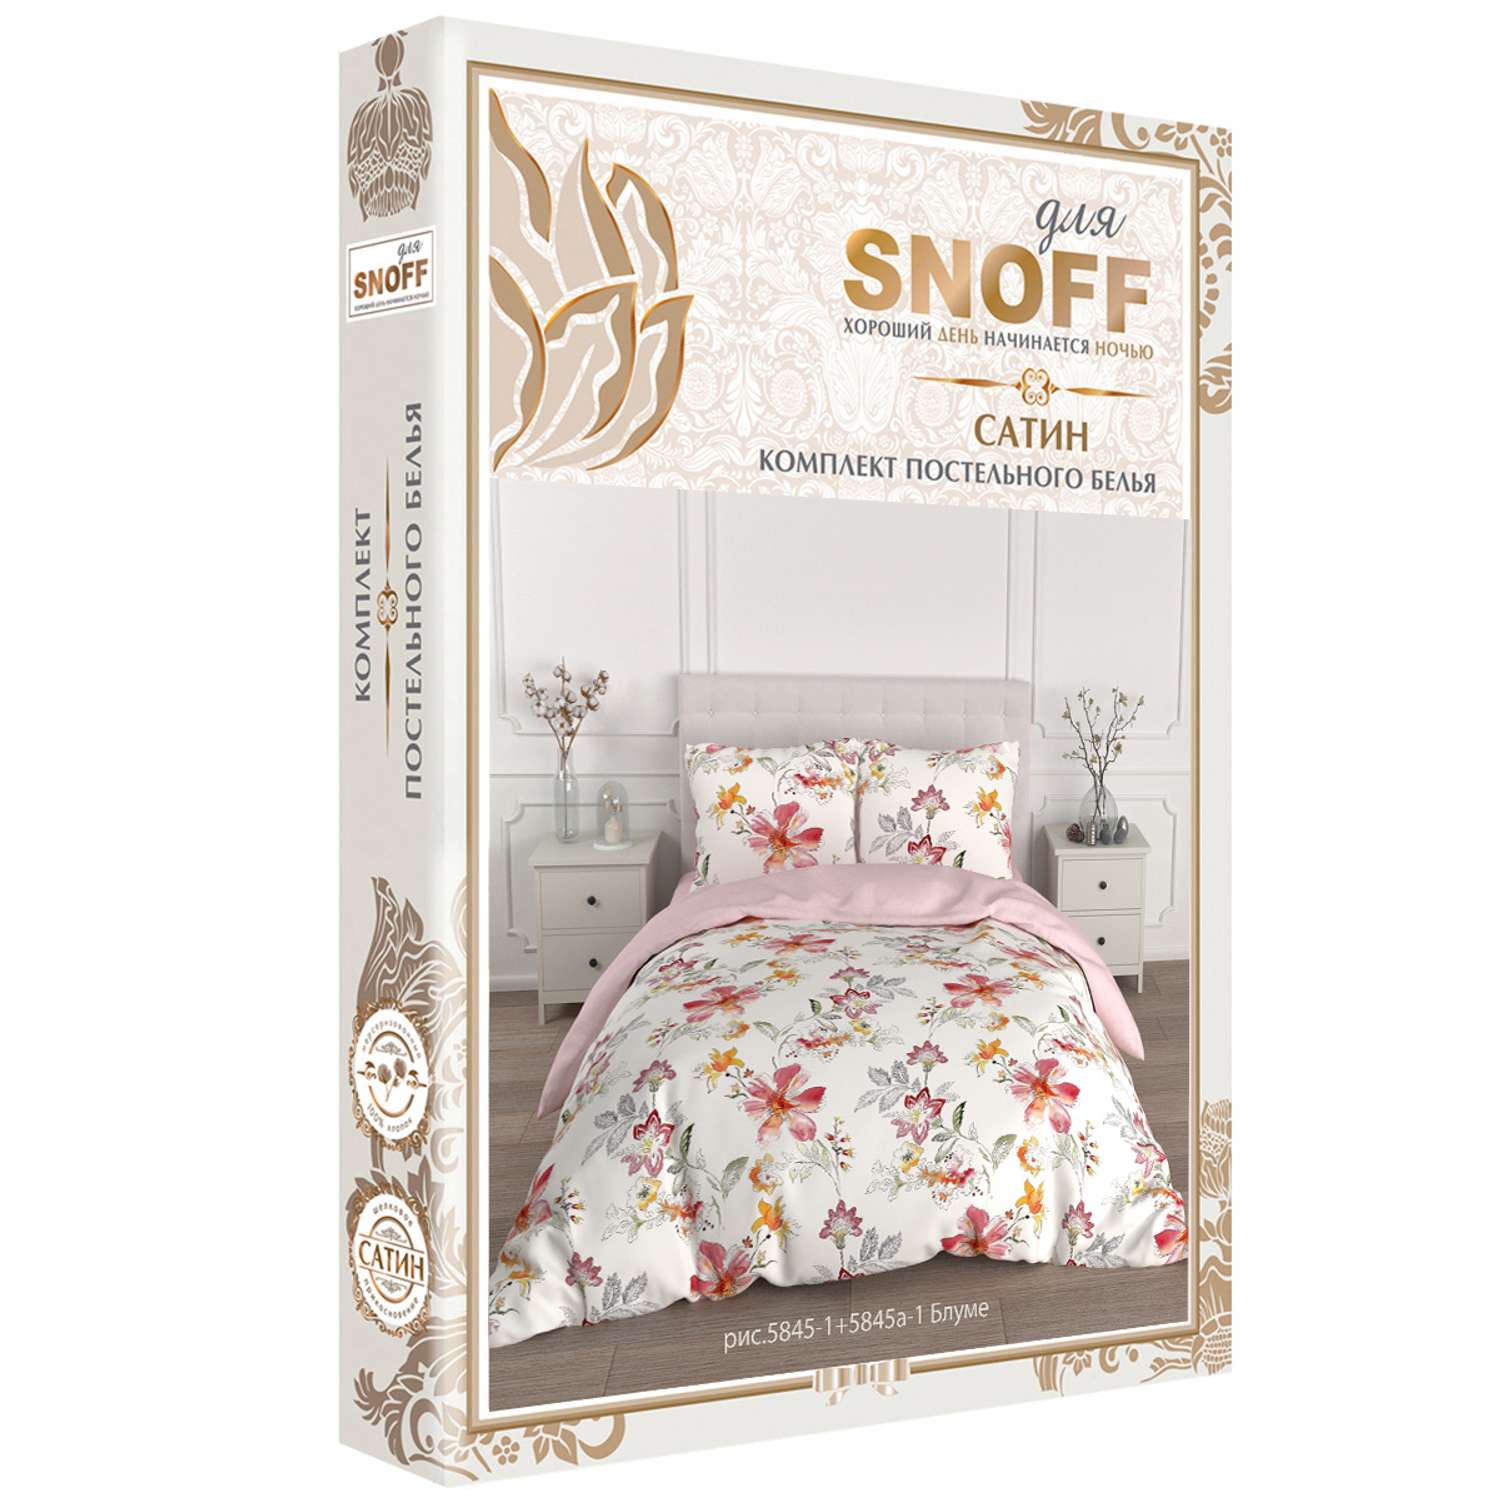 Комплект постельного белья для SNOFF Блуме евро сатин - фото 7